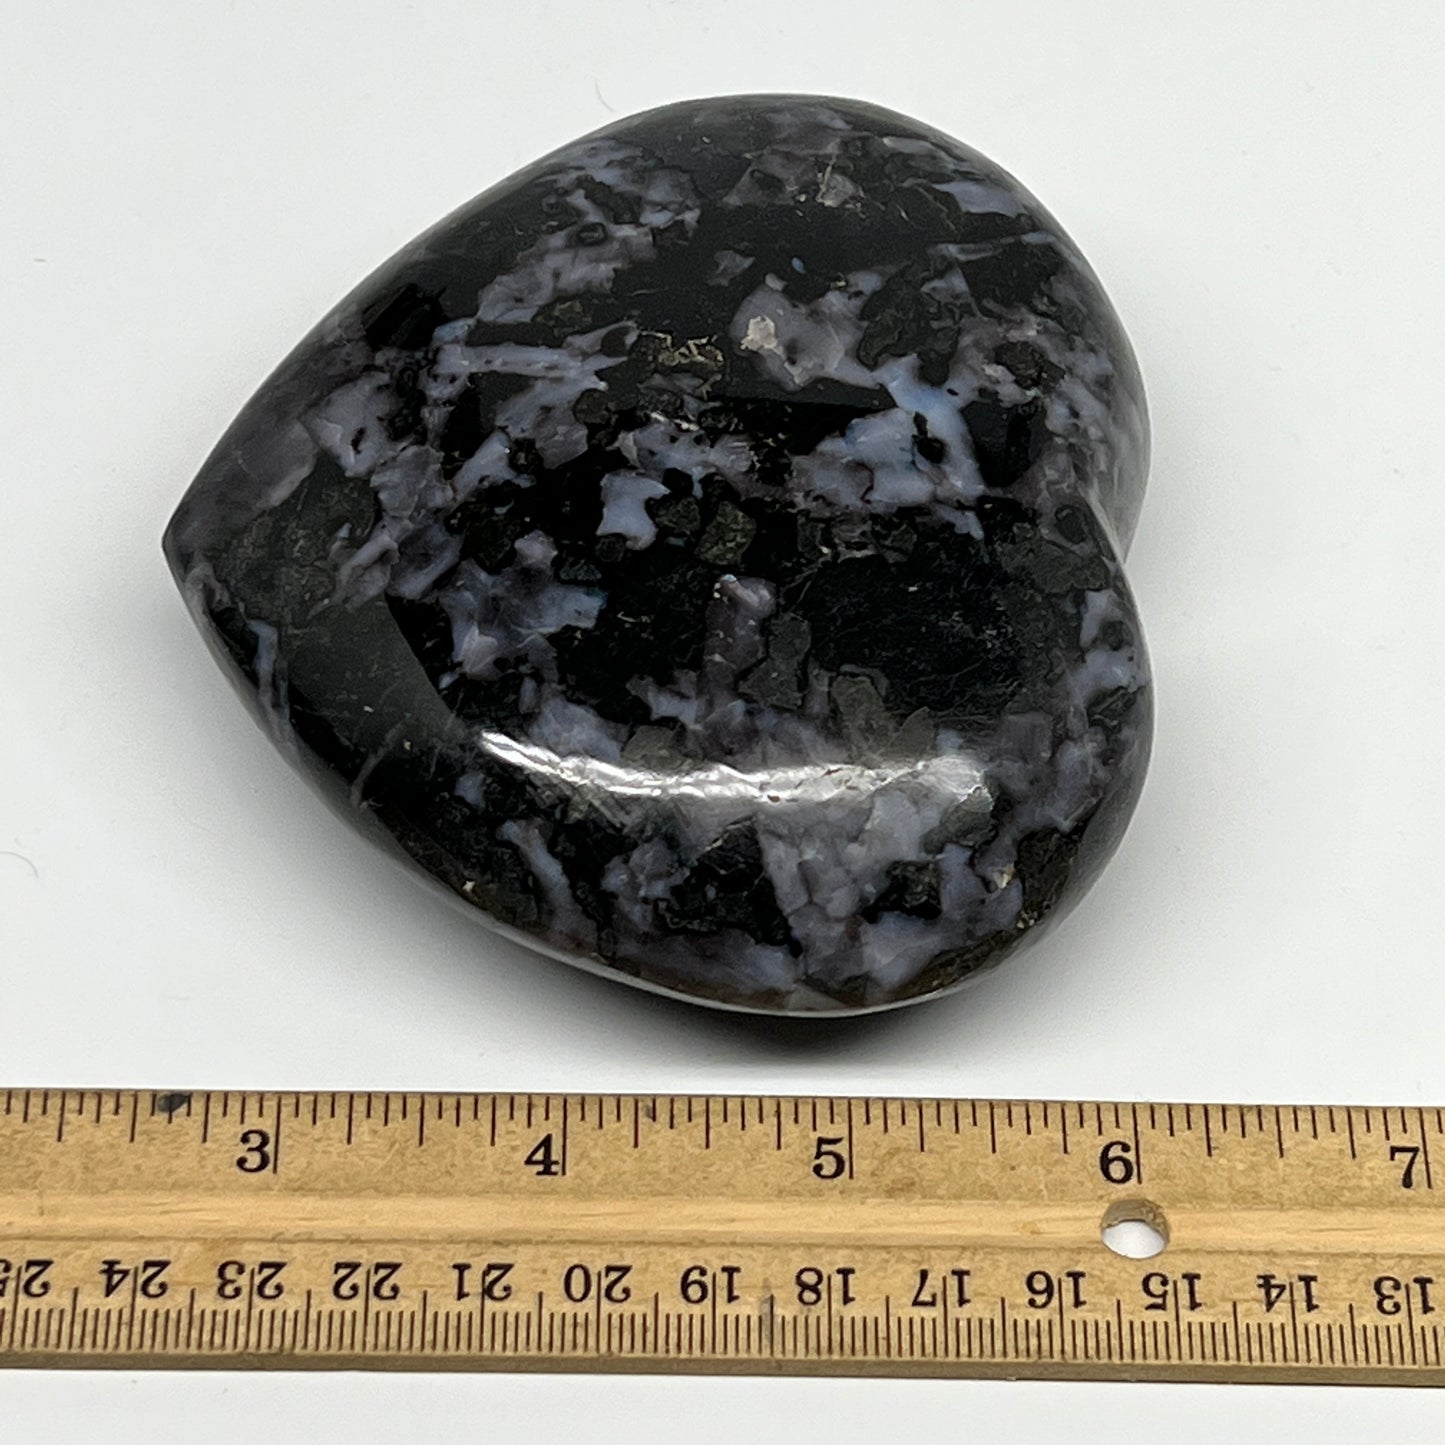 580g,3.7"x4"x1.5" Indigo Gabro Merlinite Heart Gemstone @Madagascar,B19907